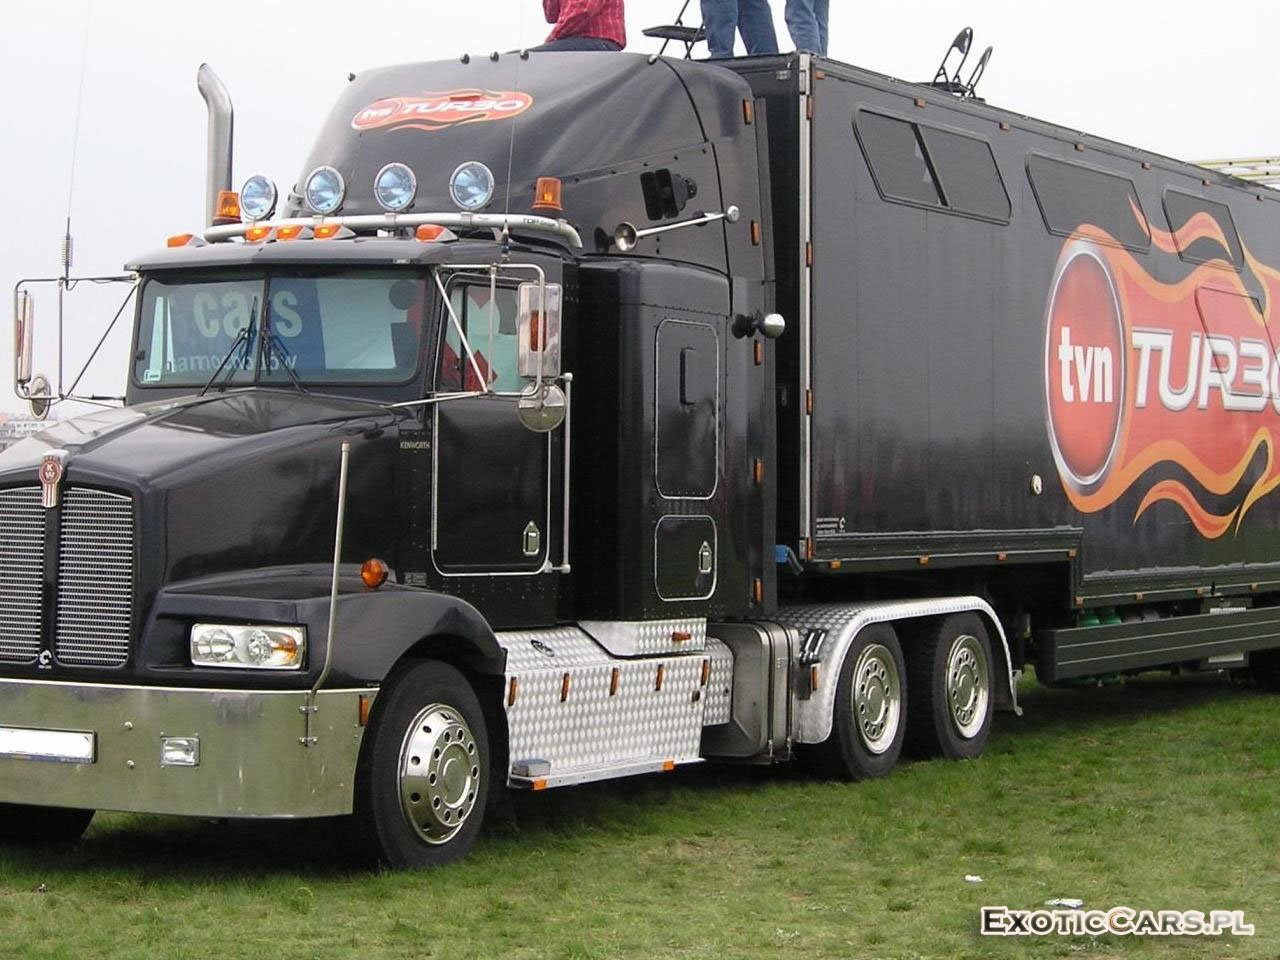 Download full size Trucks wallpaper / Vehicles / 1280x960